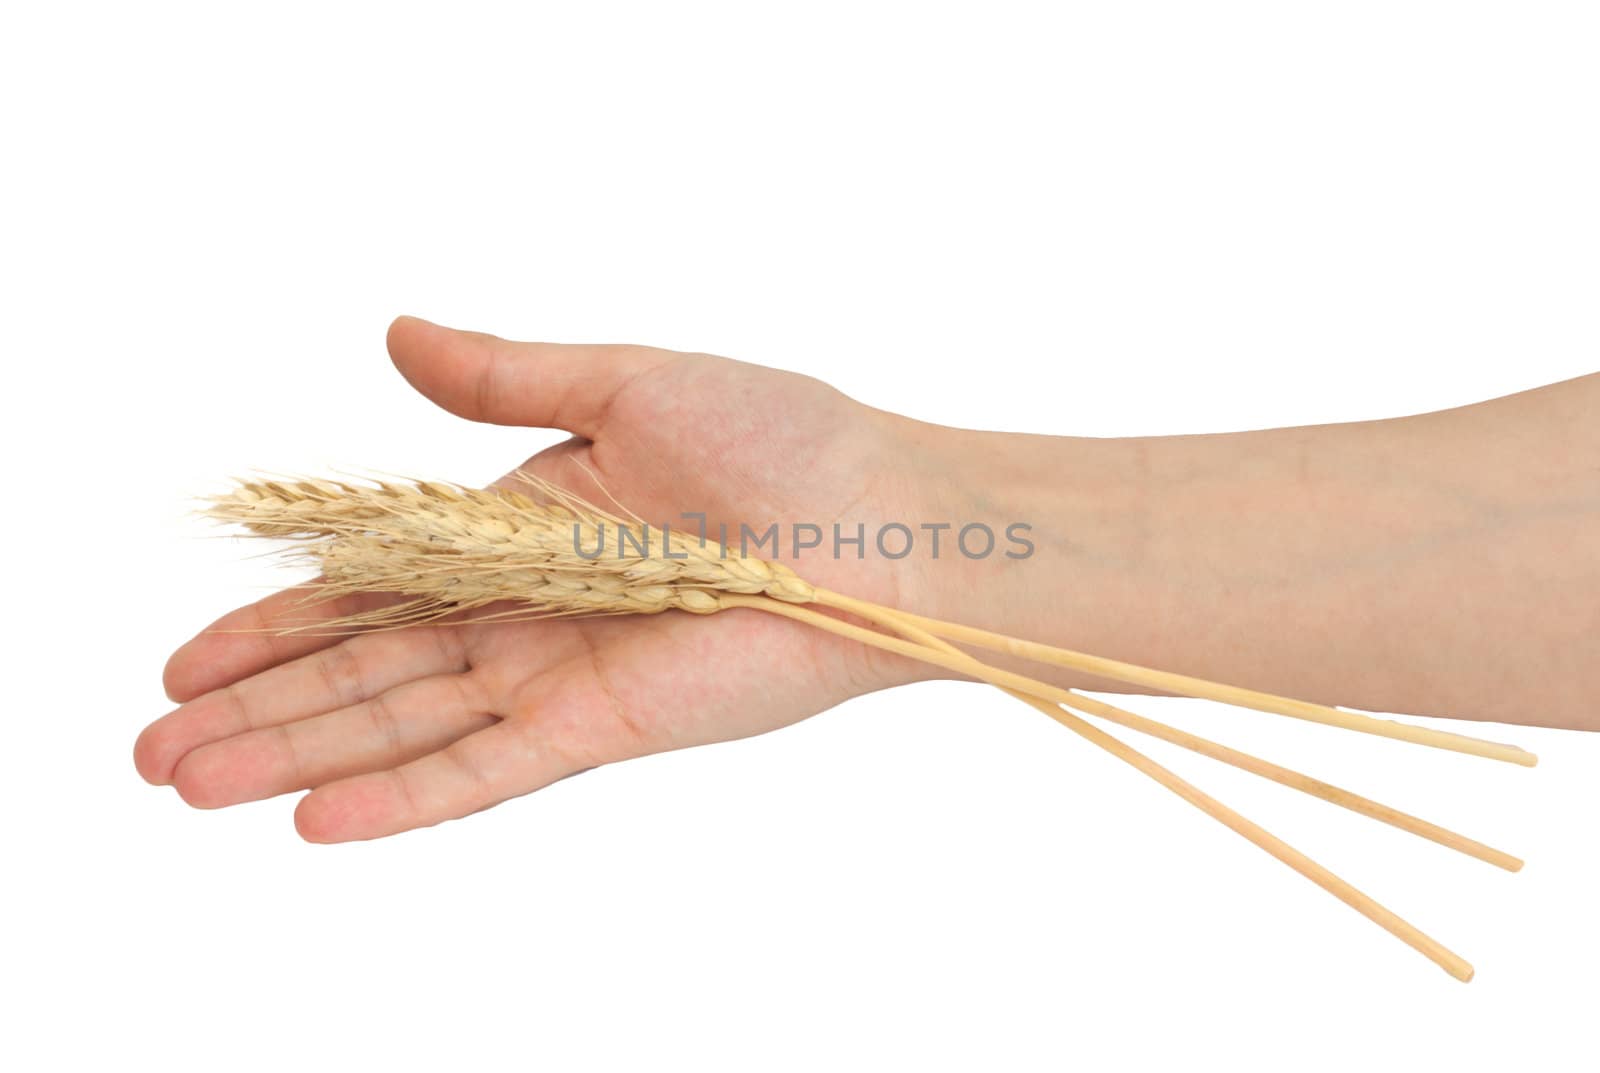 Wheat in a hand  by schankz